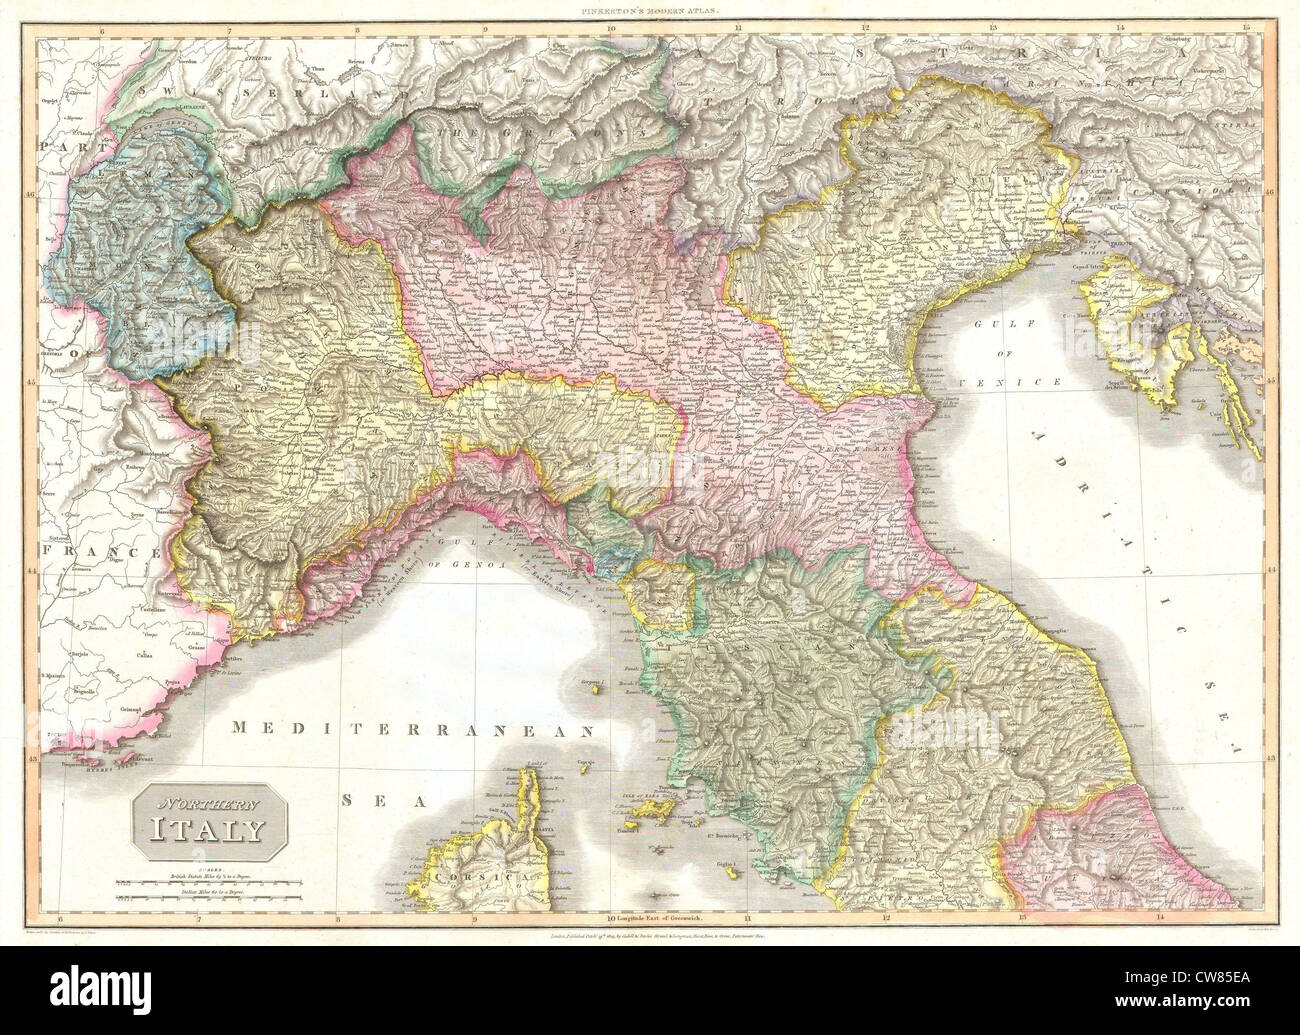 1809 Pinkerton Mapa del norte de Italia (Toscana, Florencia, Venecia, Milán ) Foto de stock